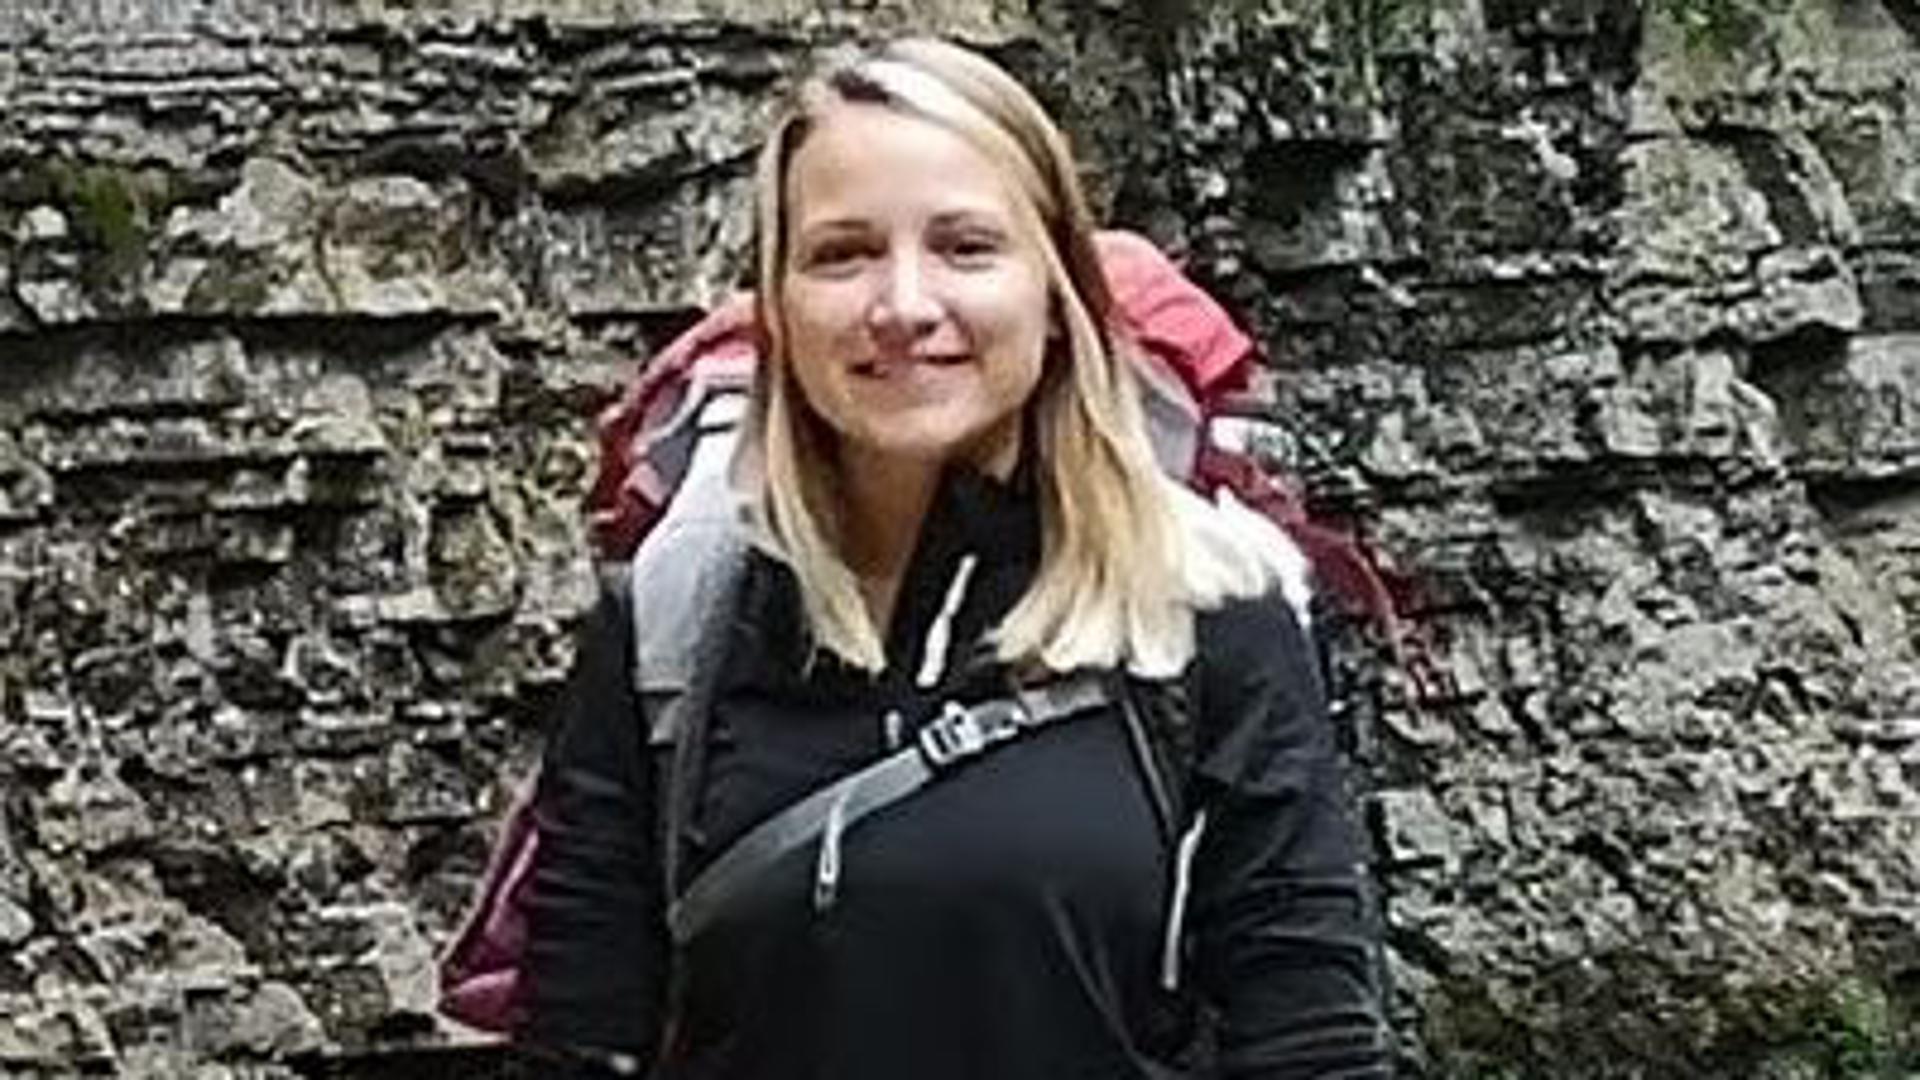 Vier Tage vor ihrem Verschwinden im September 2020 verschickte die Wanderin aus Bad Lippspringe dieses Foto aus dem Schwarzwald.